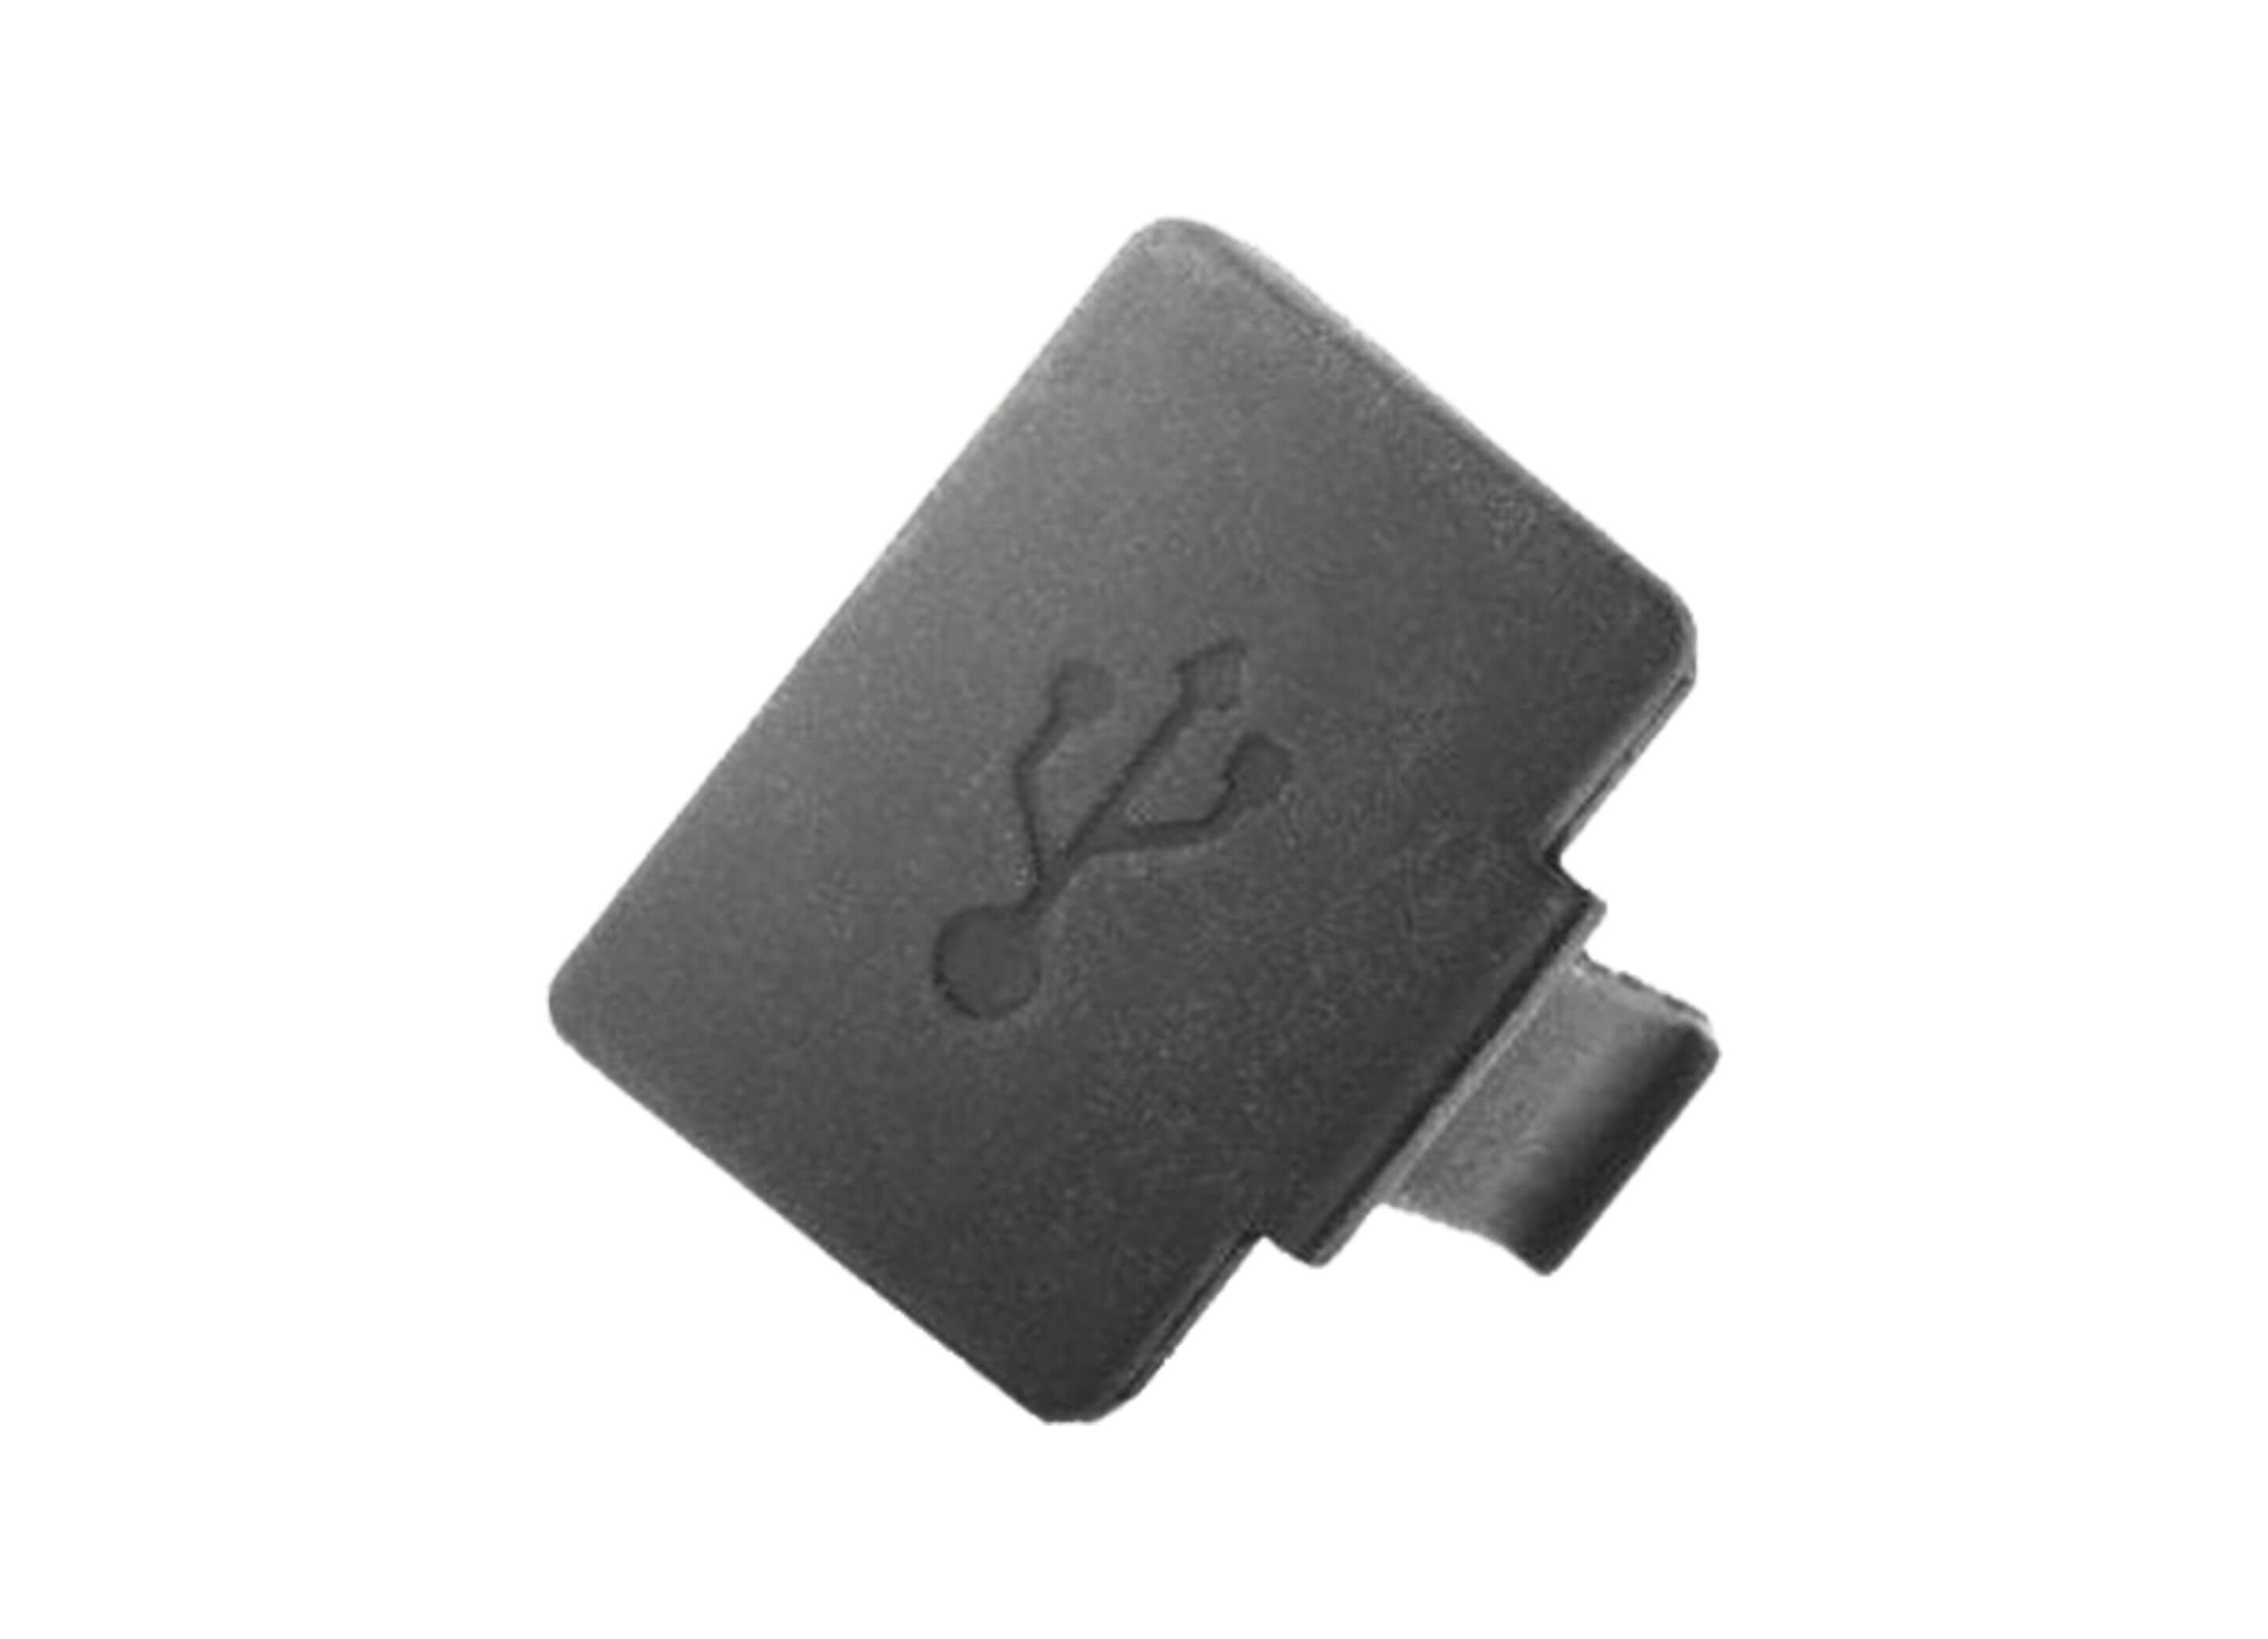 Bosch Kiox USB Cap